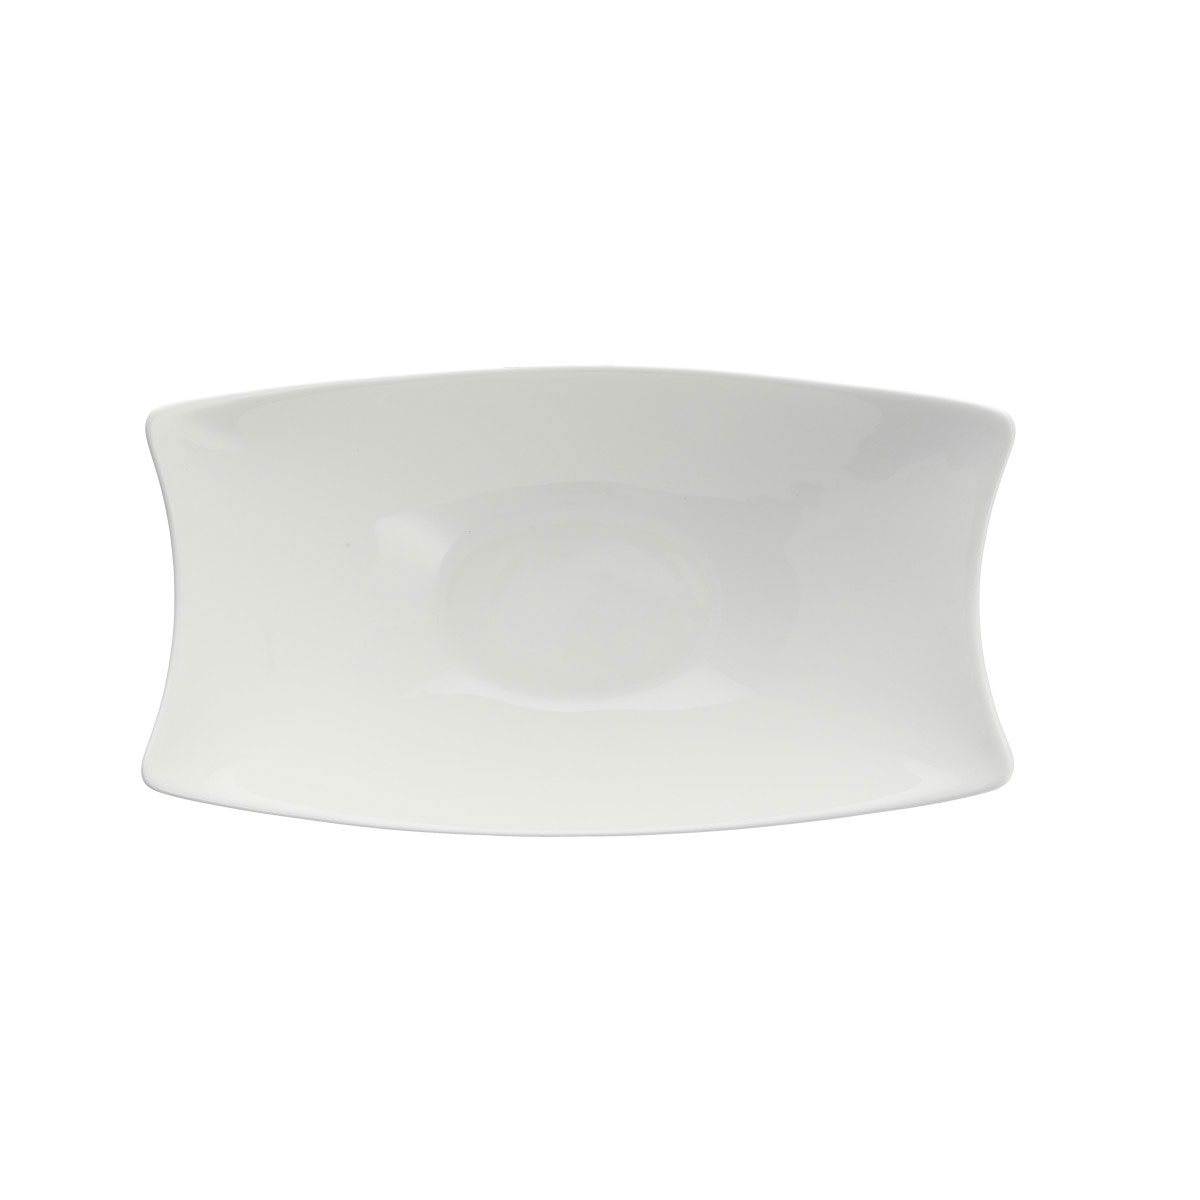 Fortessa Porcelain Fiji Rectangle Bowl 10.5" 26.5cm 28oz